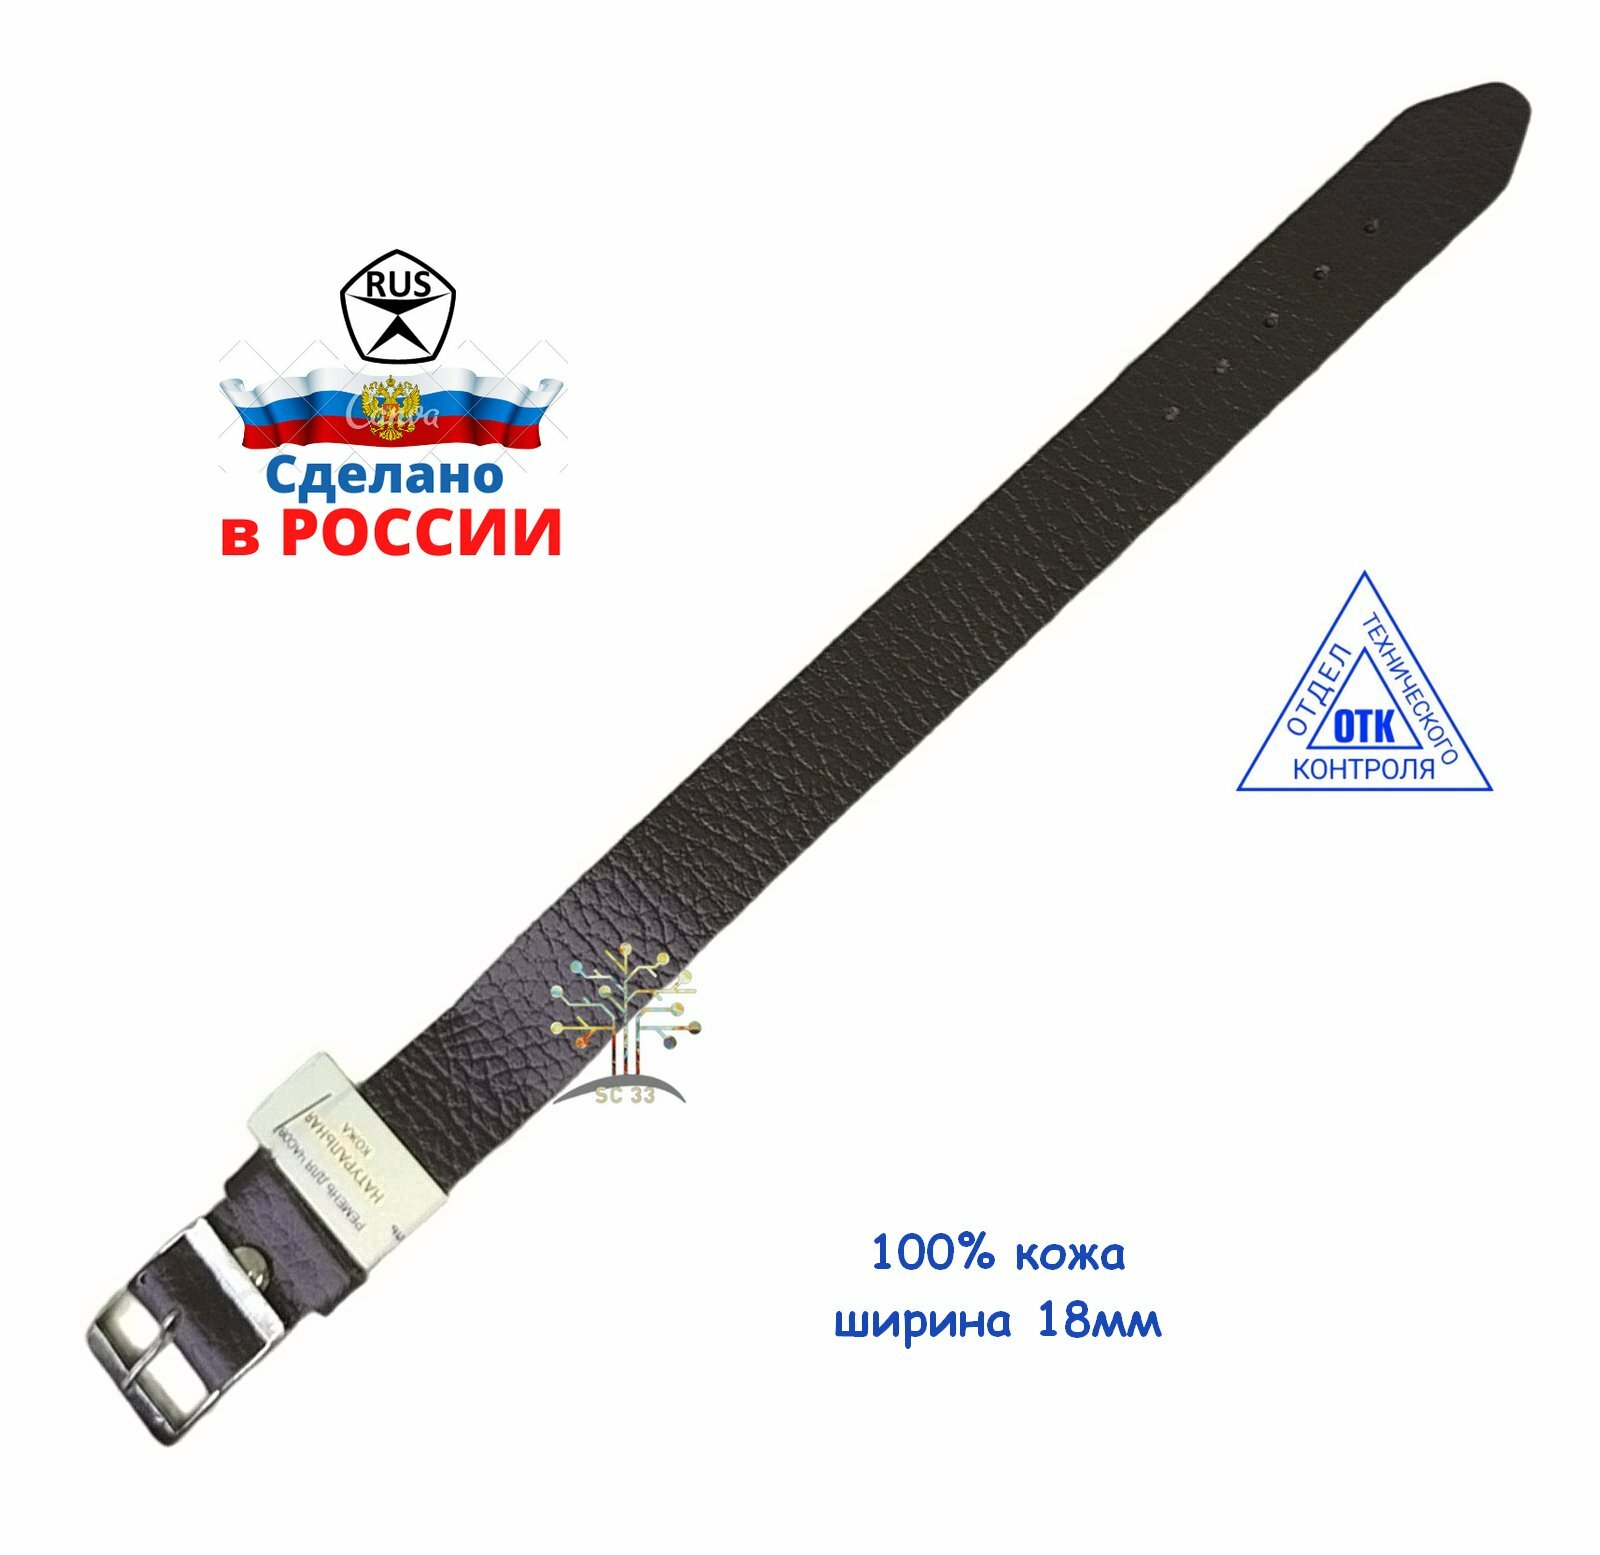 Ремень сплошной для наручных часов из натуральной кожи 18мм и 20мм производство Россия